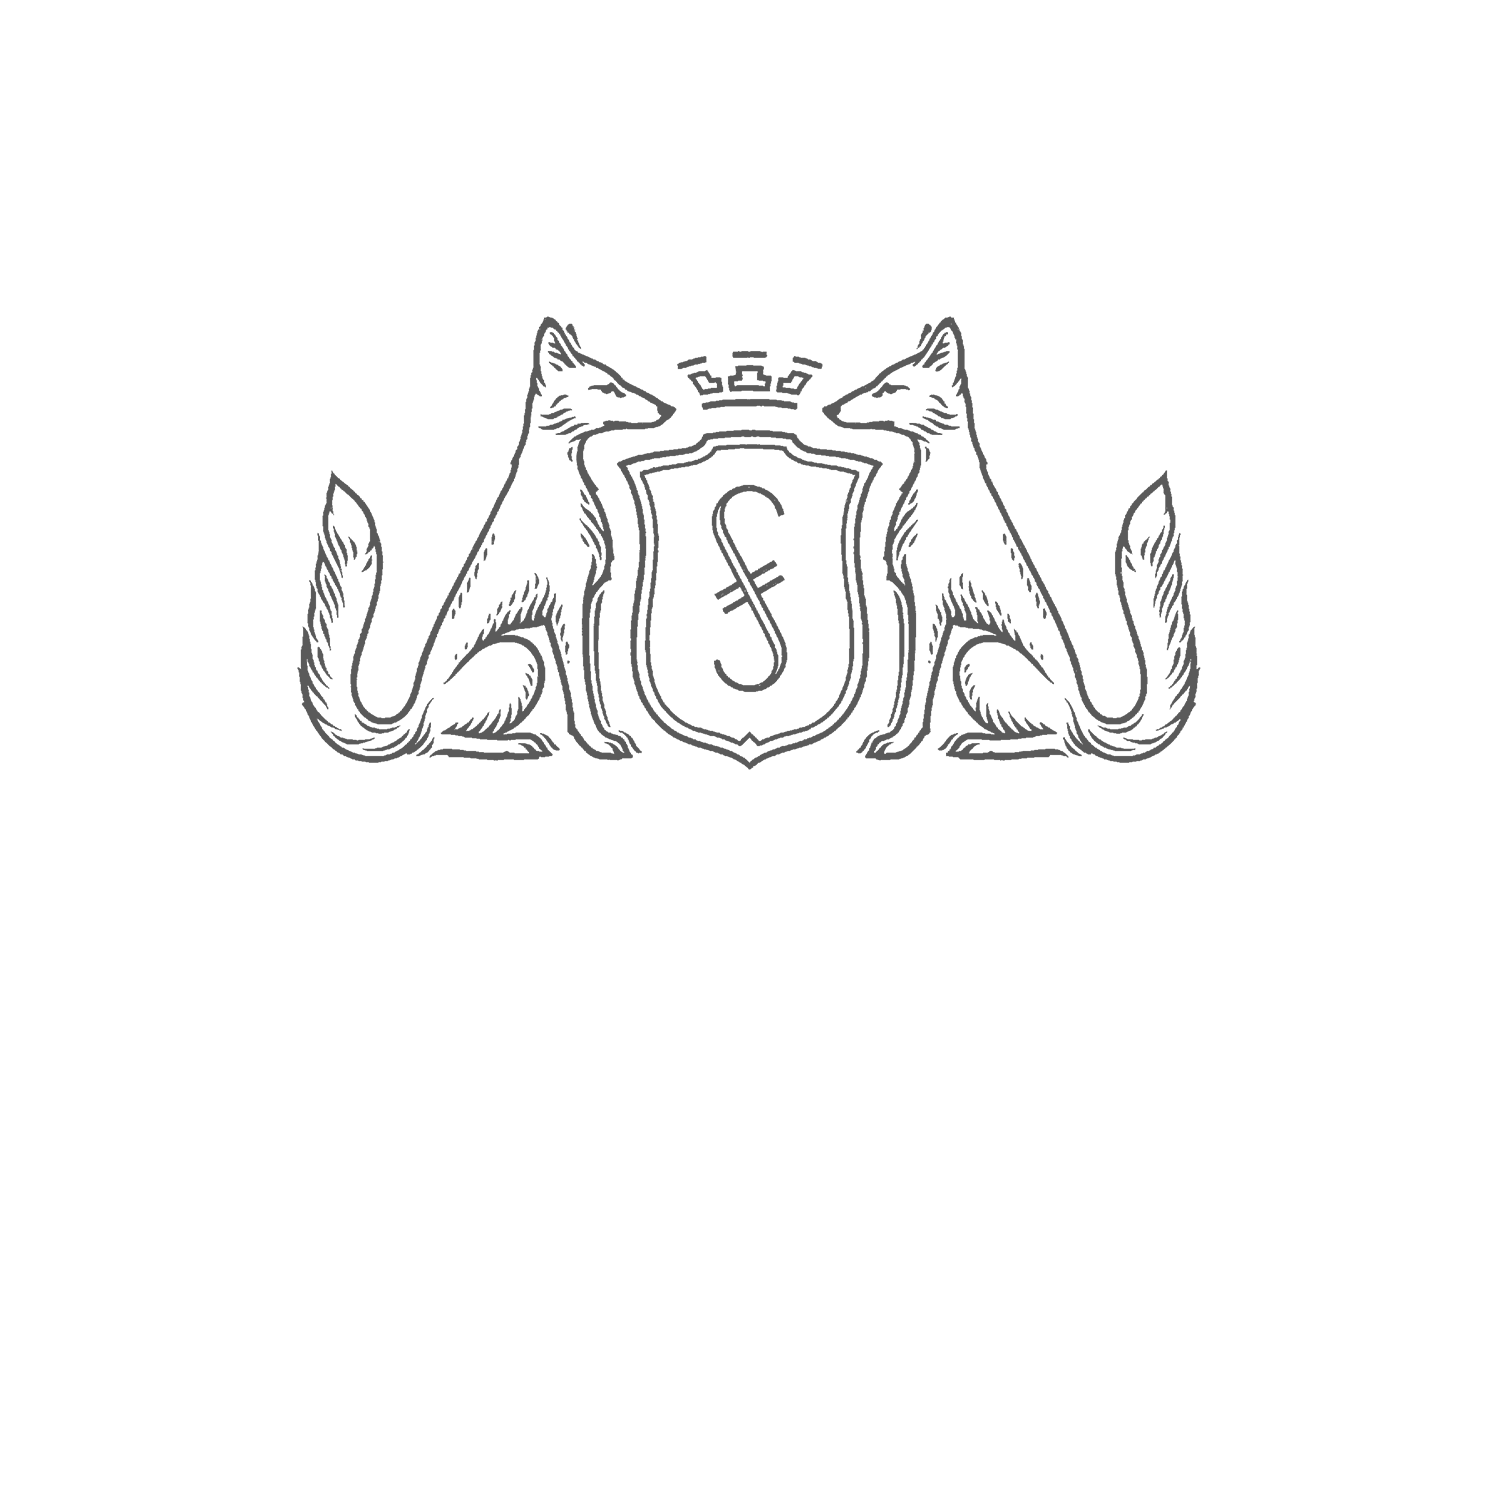 Steven Fox Jewelry Logo